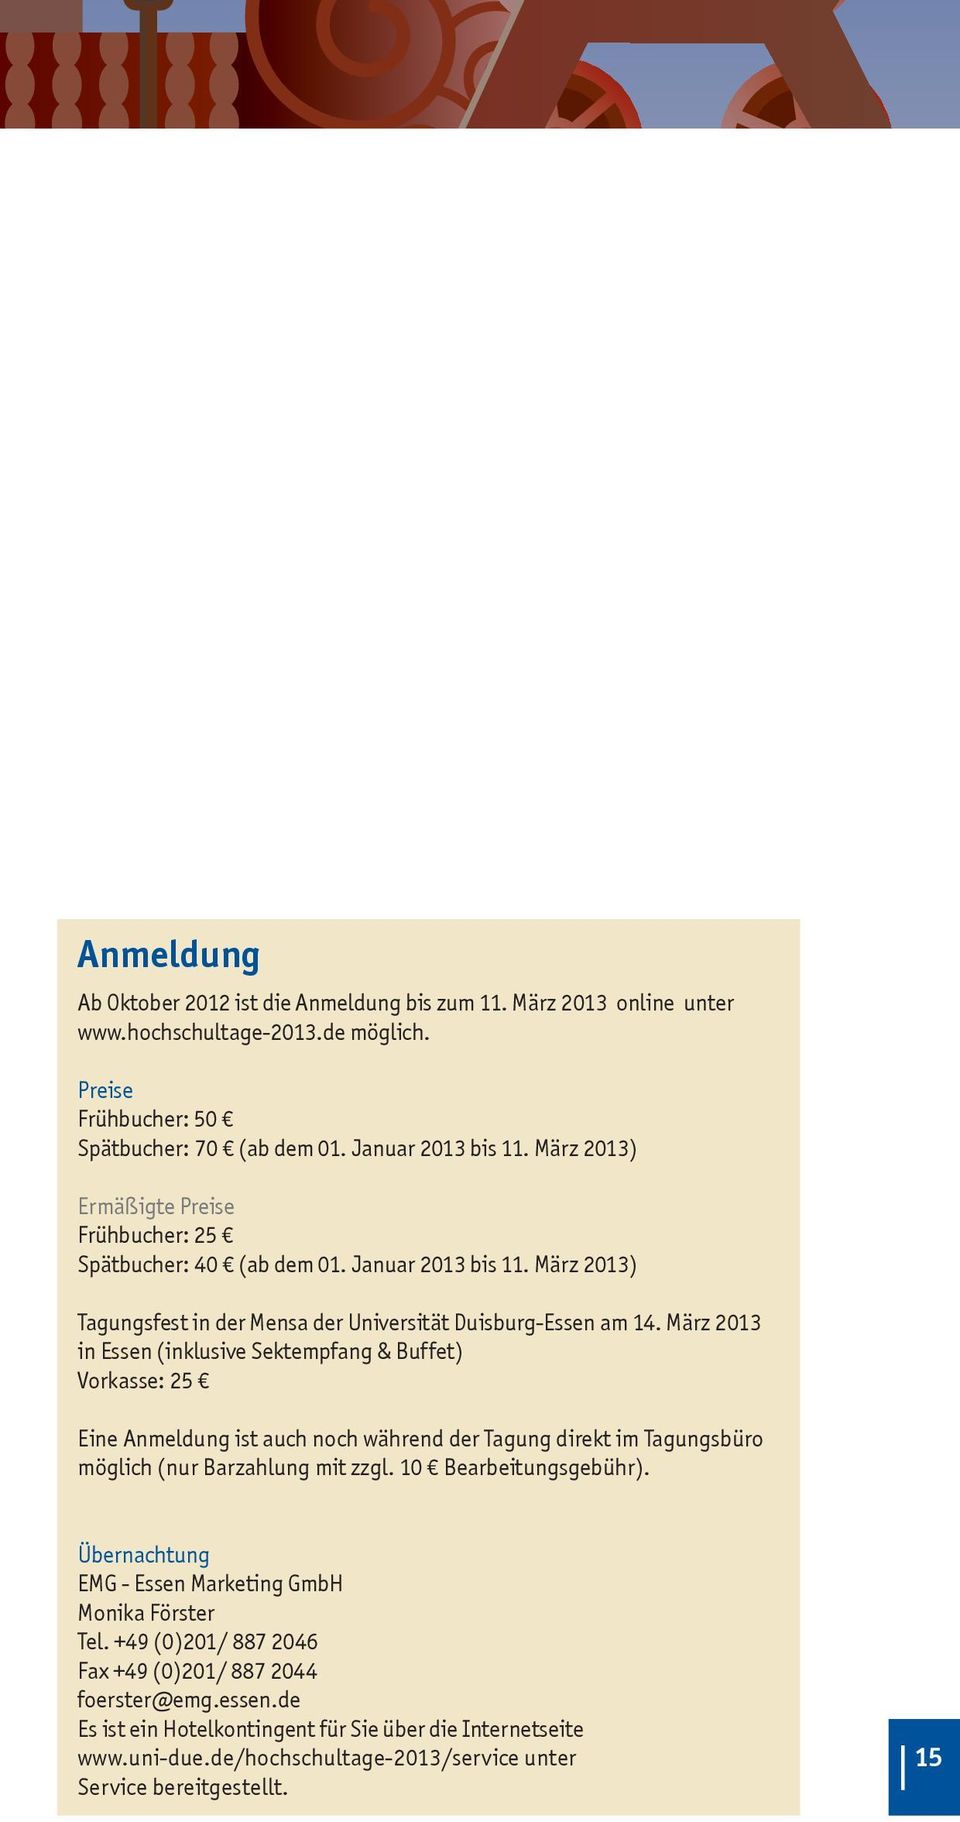 März 2013 in Essen (inklusive Sektempfang & Buffet) Vorkasse: 25 Eine Anmeldung ist auch noch während der Tagung direkt im Tagungsbüro möglich (nur Barzahlung mit zzgl. 10 Bearbeitungsgebühr).